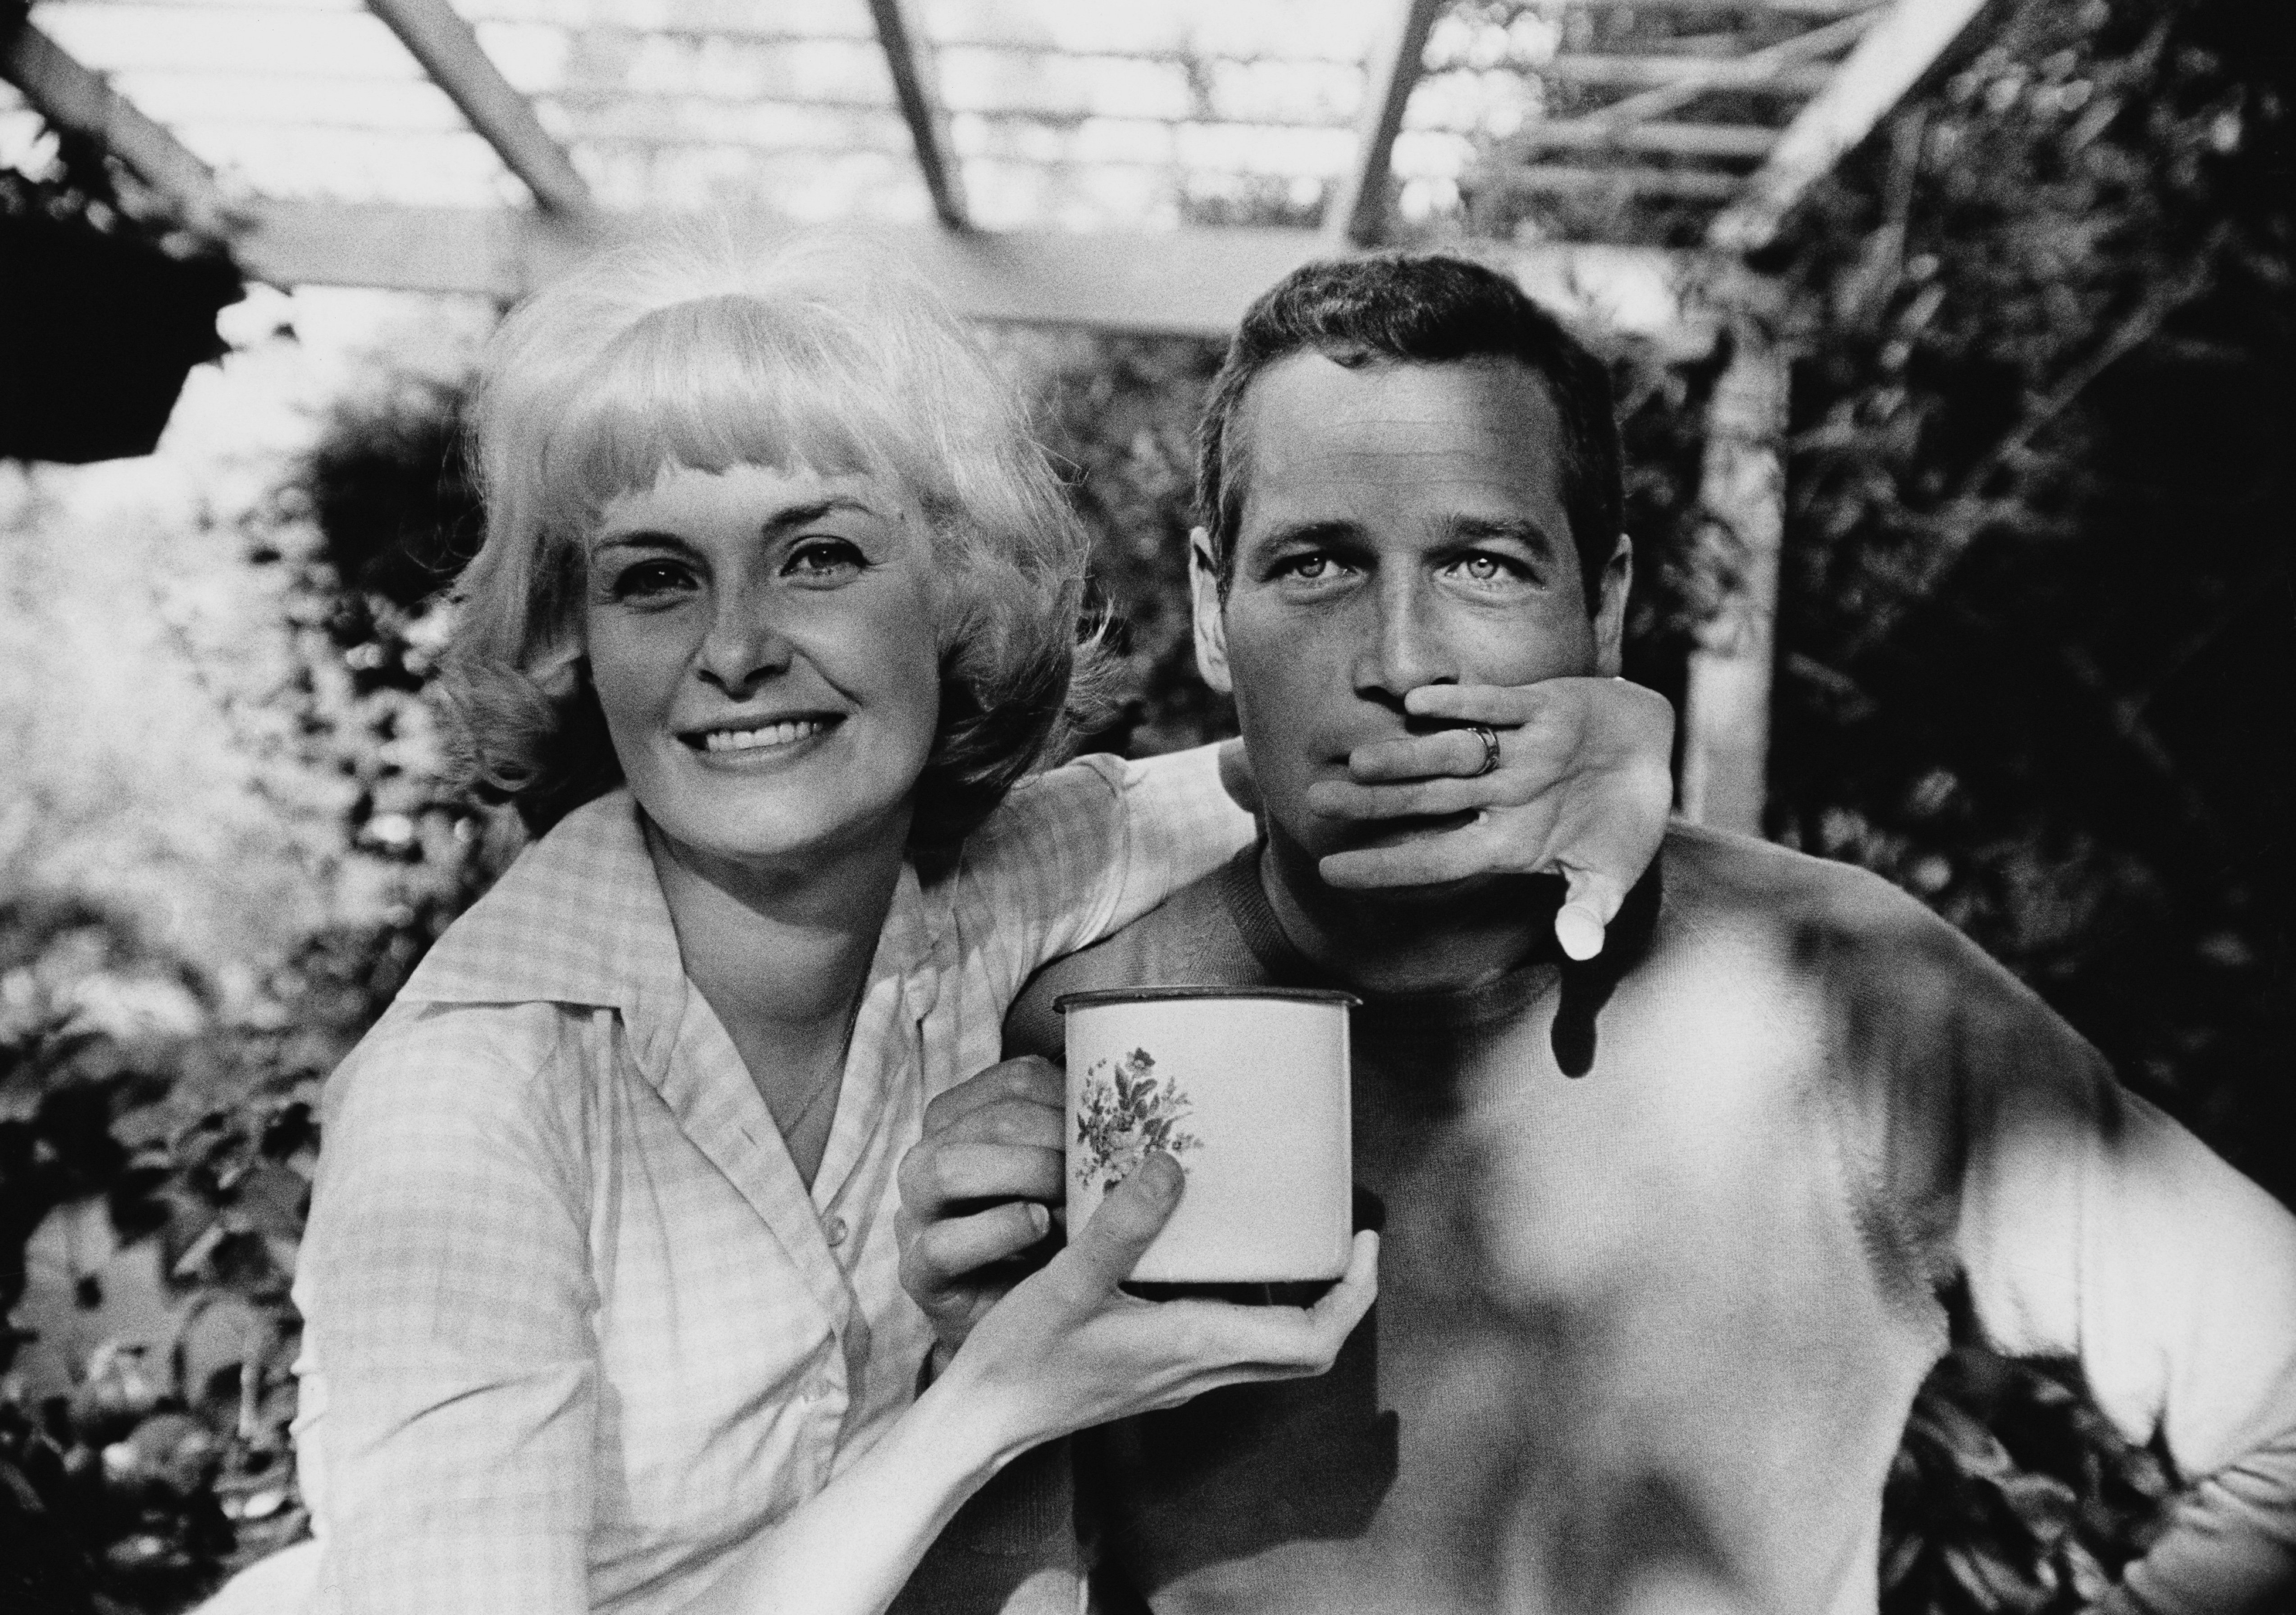 Der amerikanische Schauspieler Paul Newman (1925 - 2008) mit seiner Frau, der Schauspielerin Joanne Woodward, um 1963. | Quelle: Getty Images